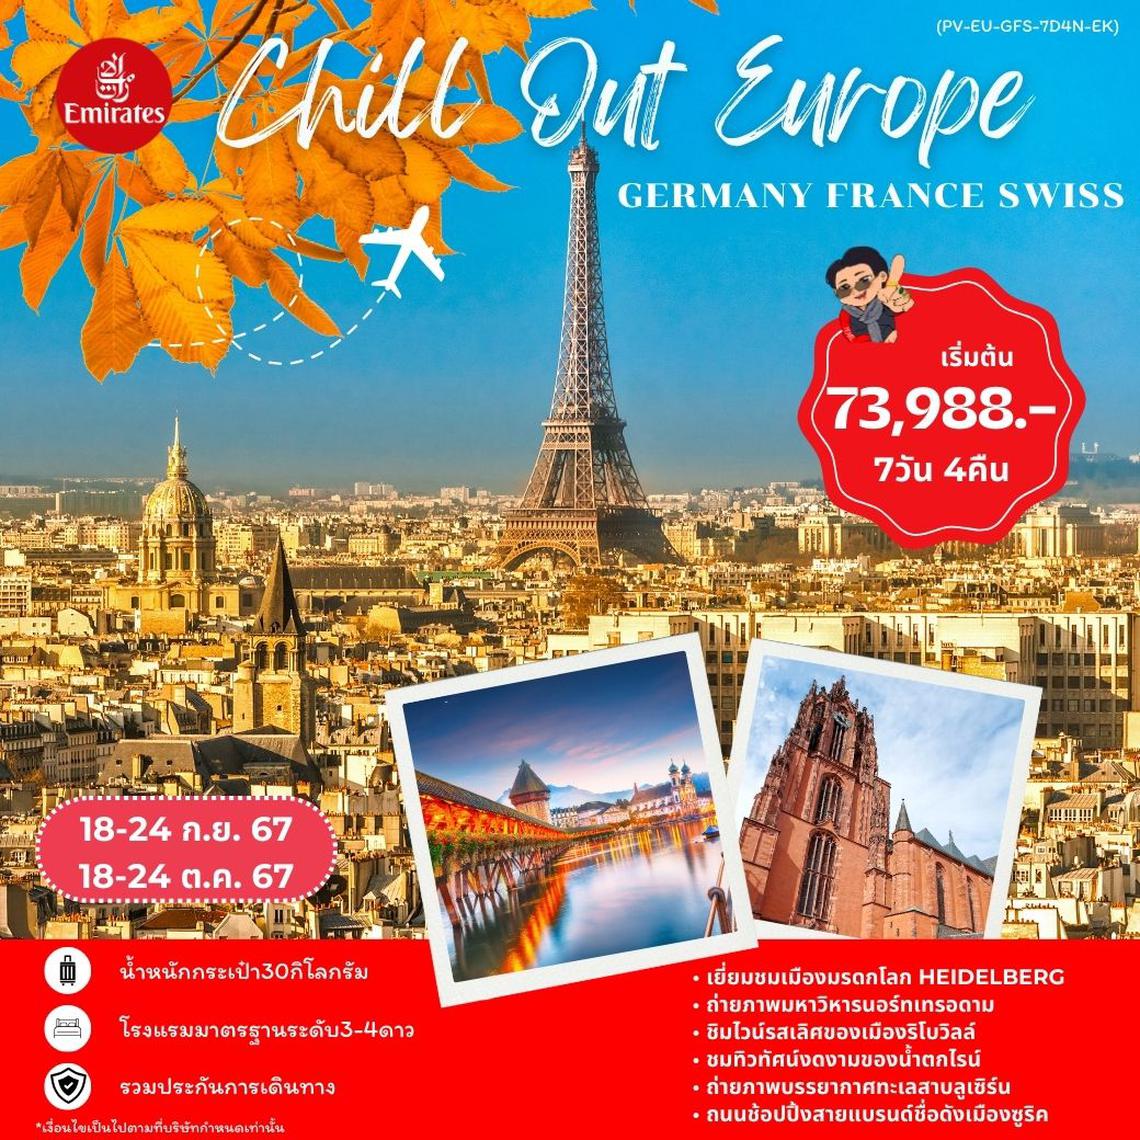 ทัวร์ยุโรป CHILL OUT EUROPE - GERMANY-FRANCE-SWISS 7D8N